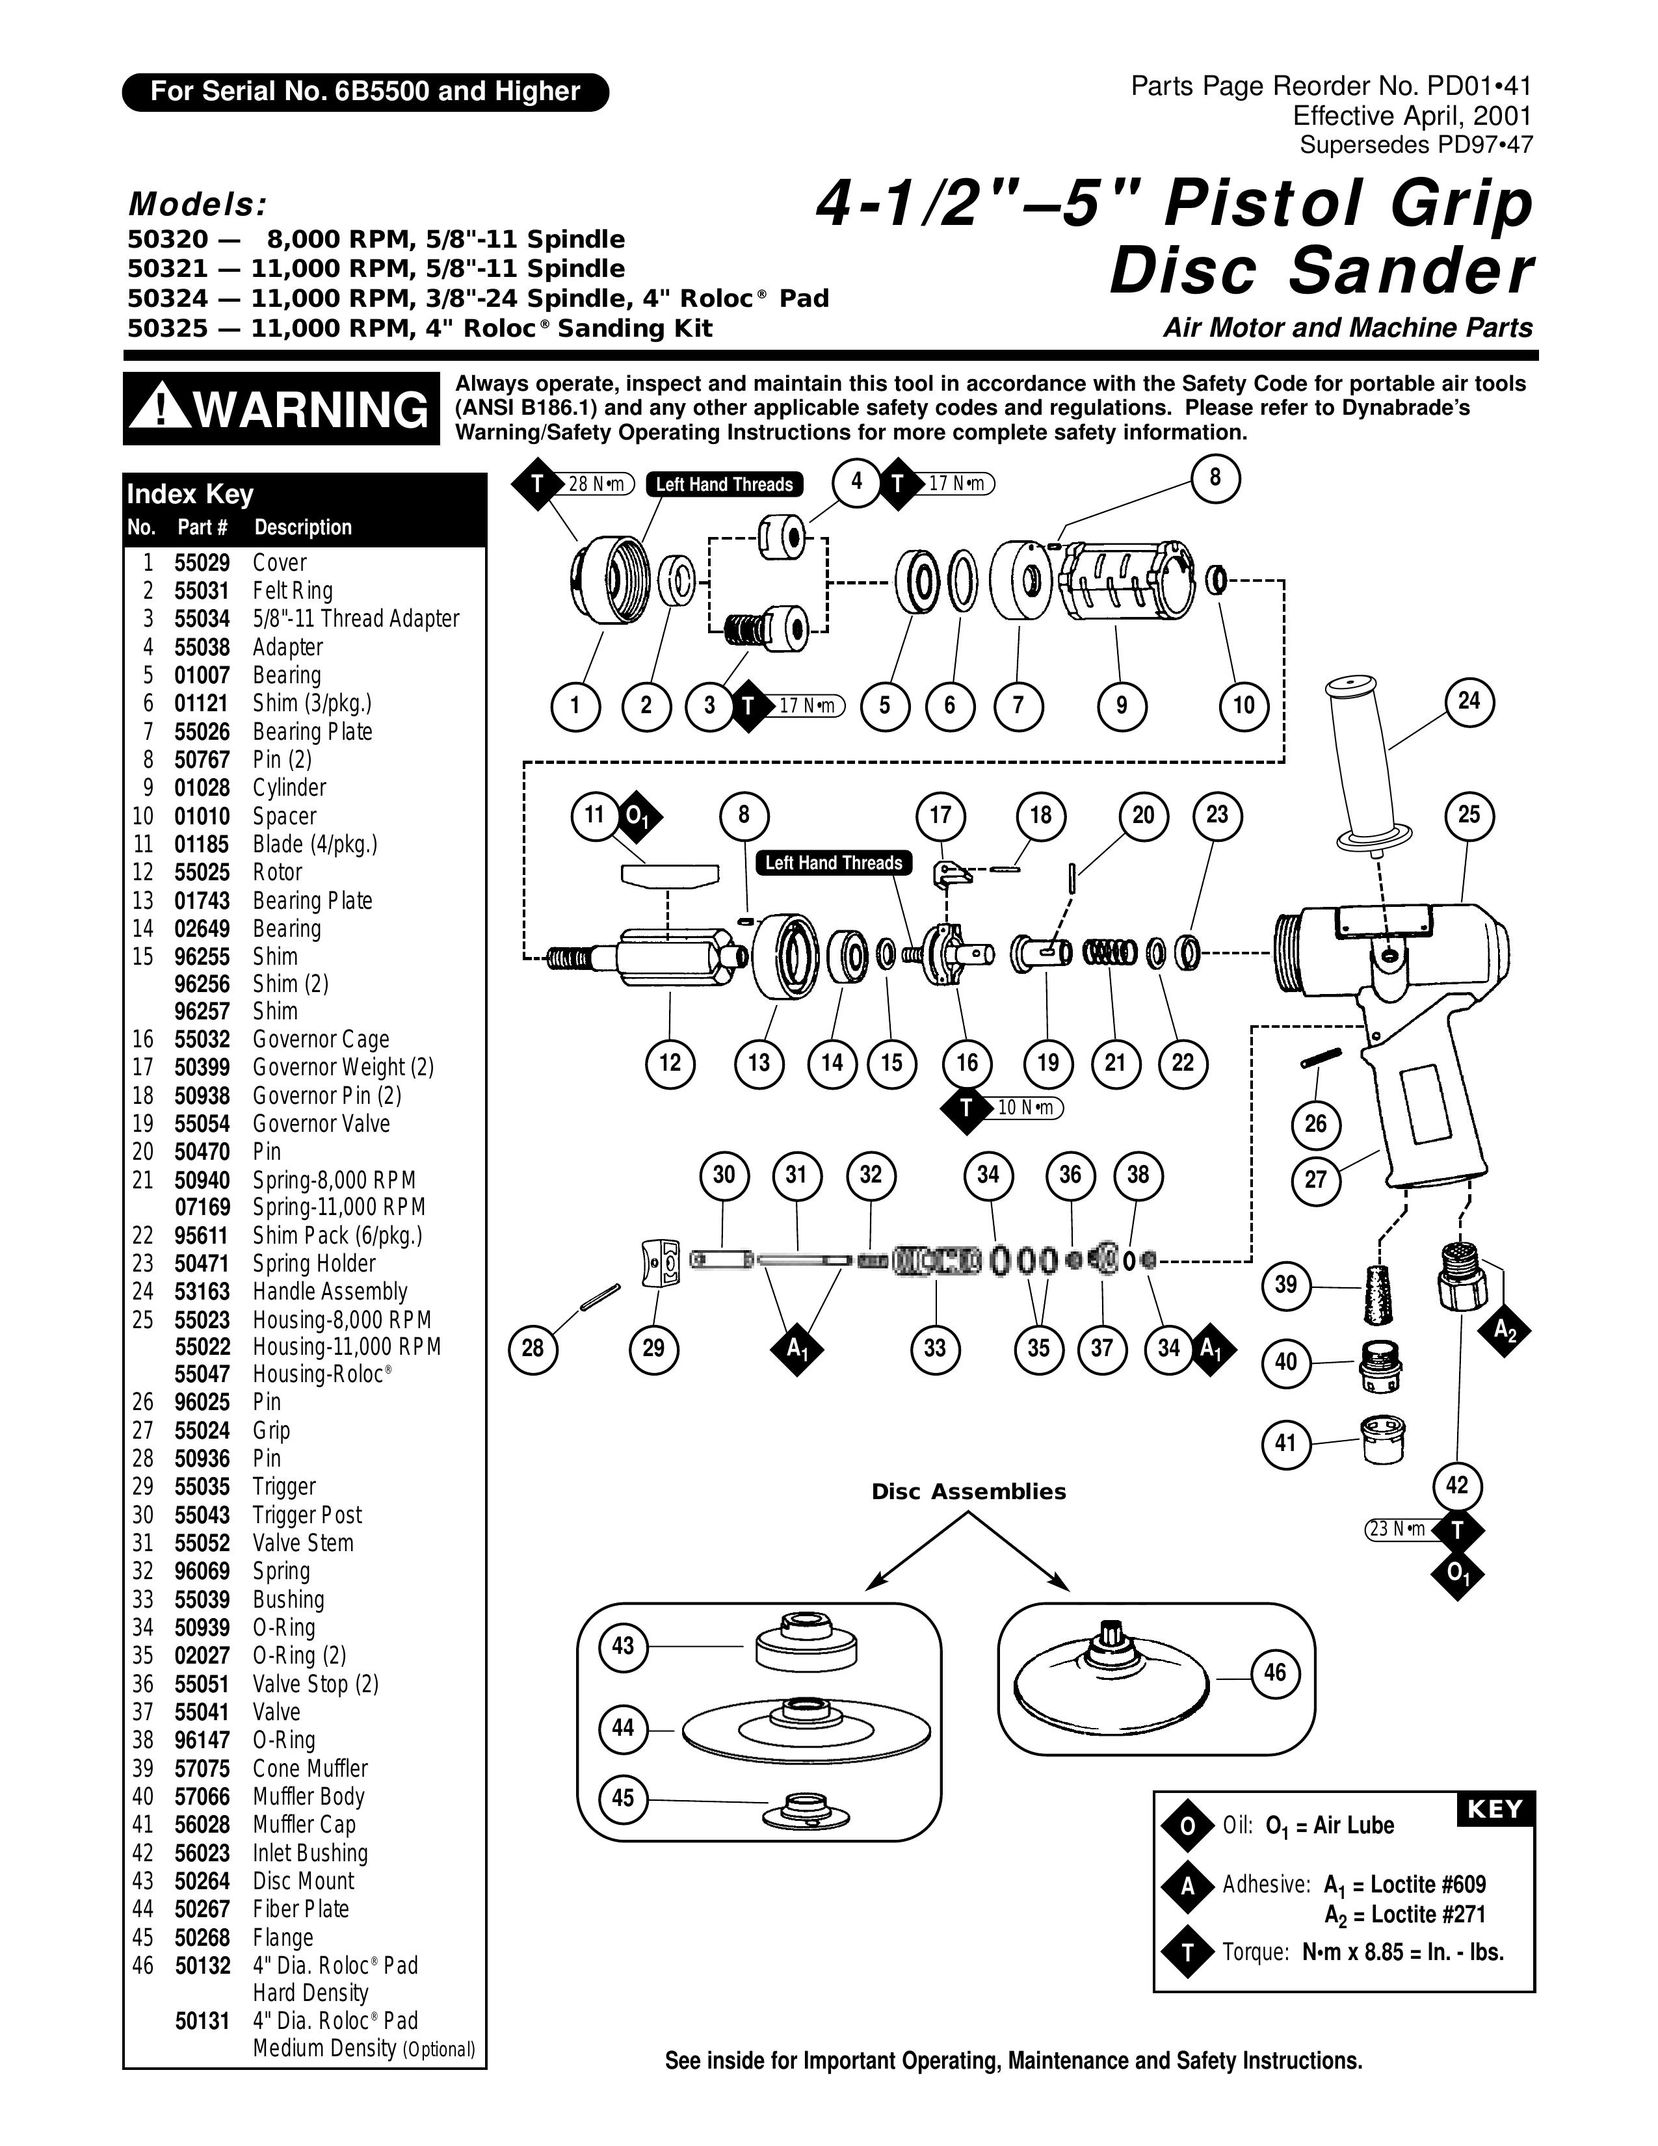 Dynabrade 3/8"-24 Spindle Cordless Sander User Manual